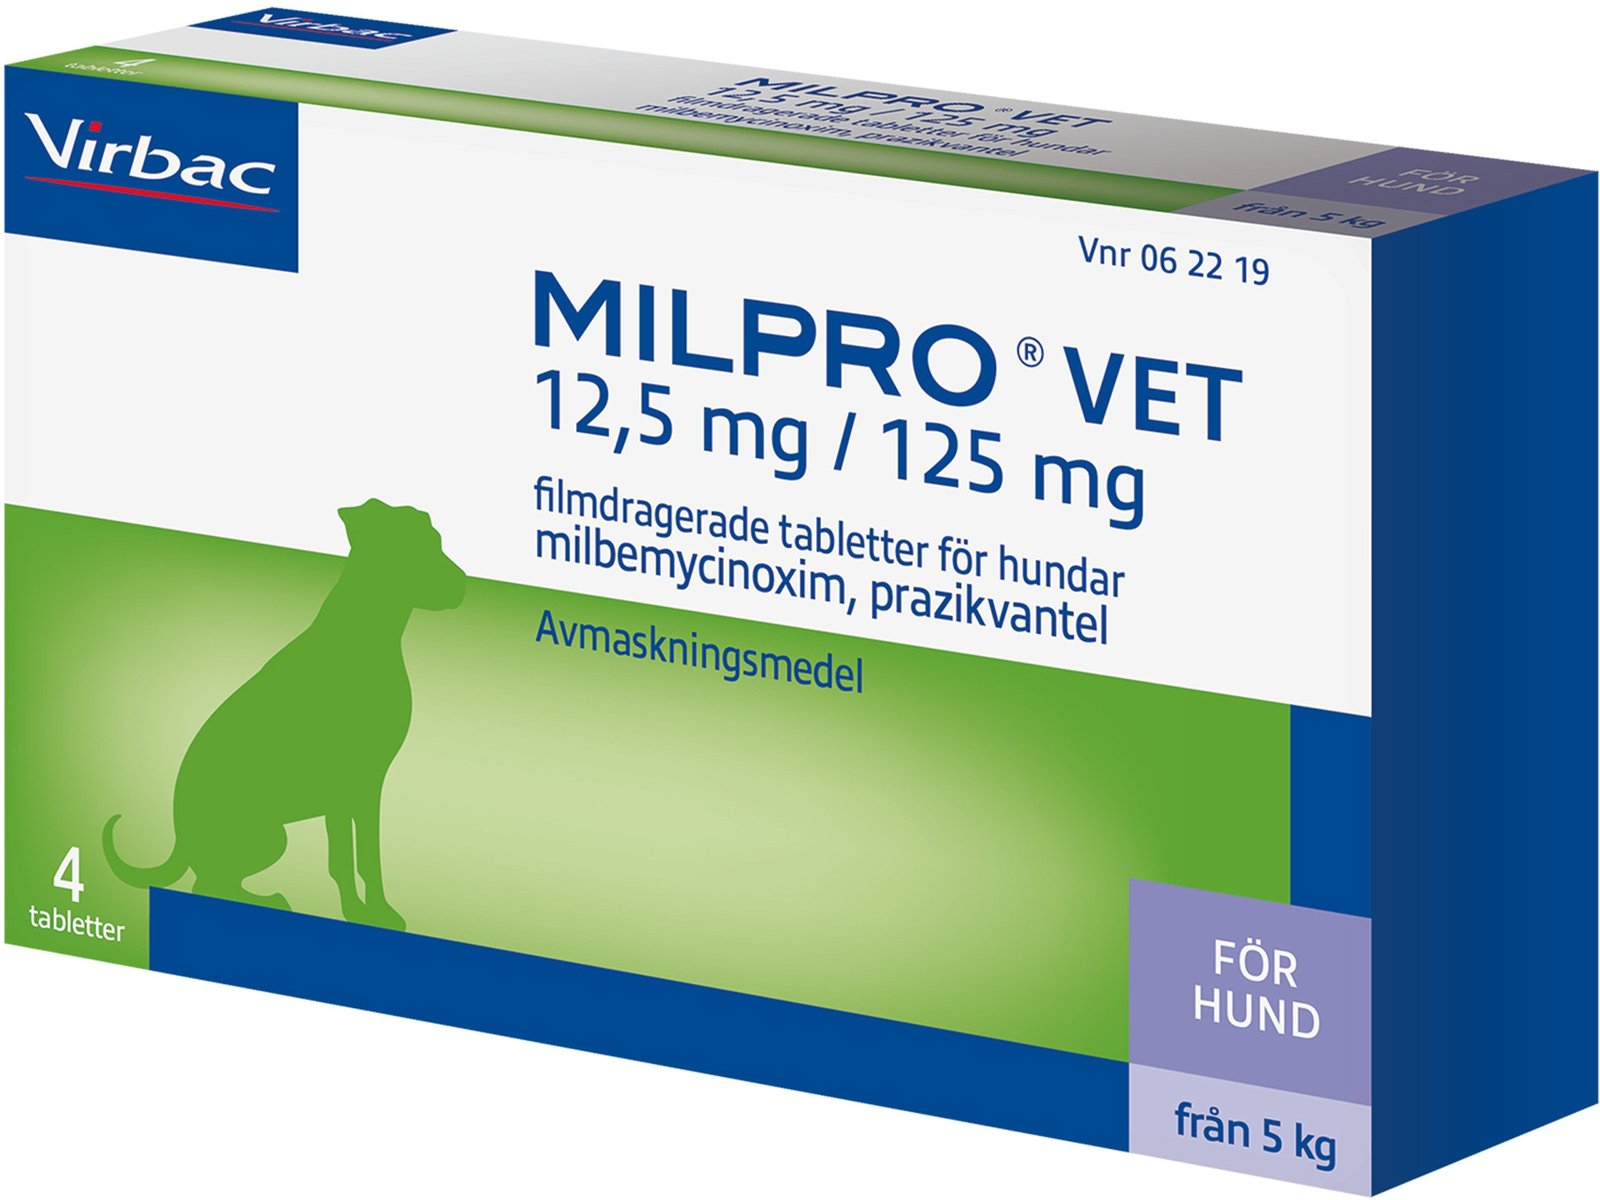 Virbac Milpro Vet 12,5 mg/125 mg Avmaskningsmedel för hundar 4 tabletter